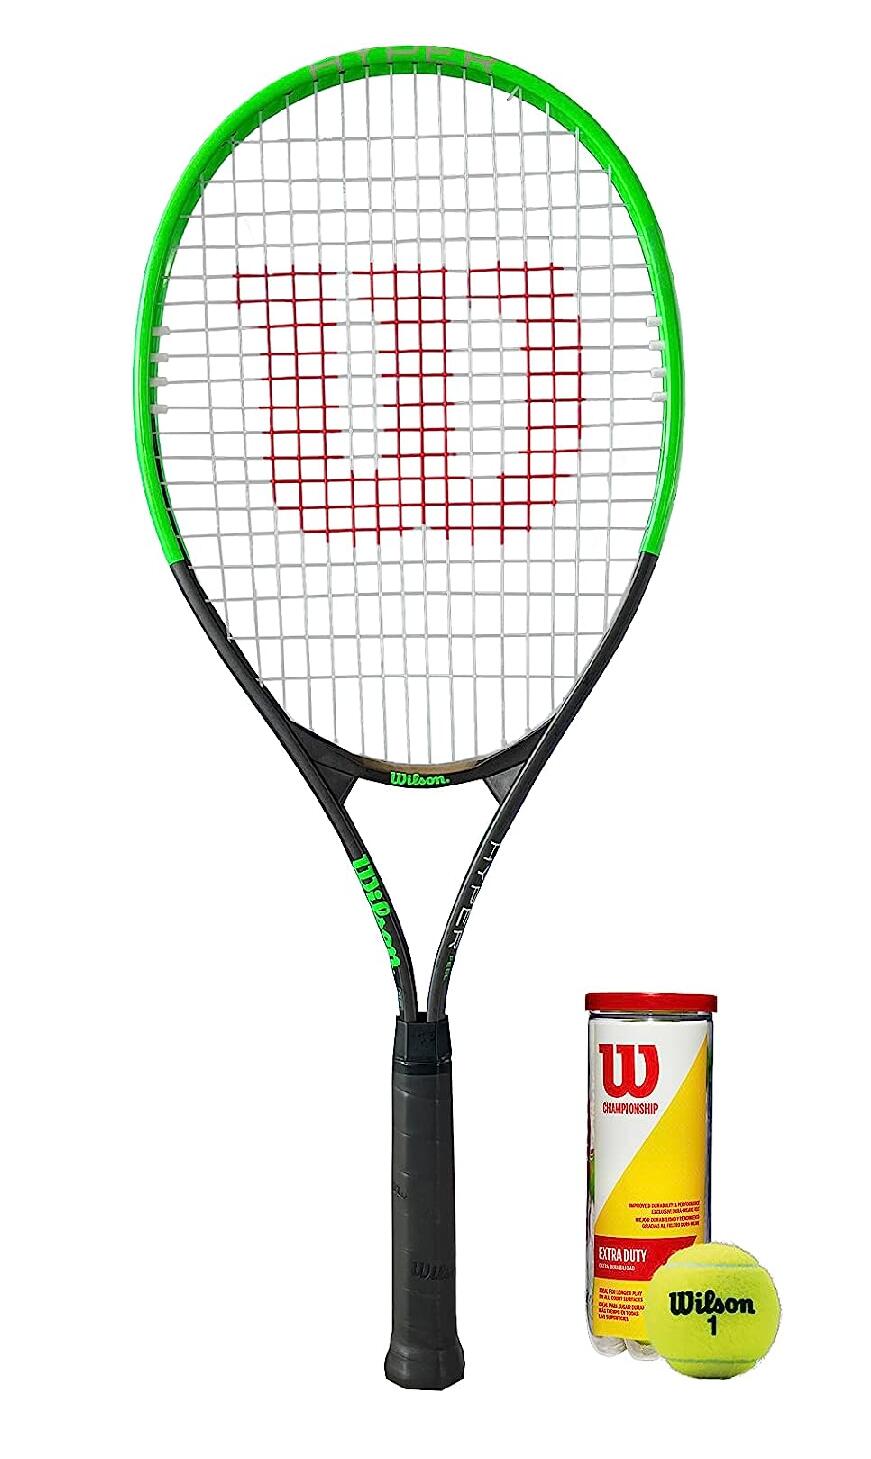 Wilson Hyper Feel Tennis Racket Inc 3 Tennis Balls 1/1